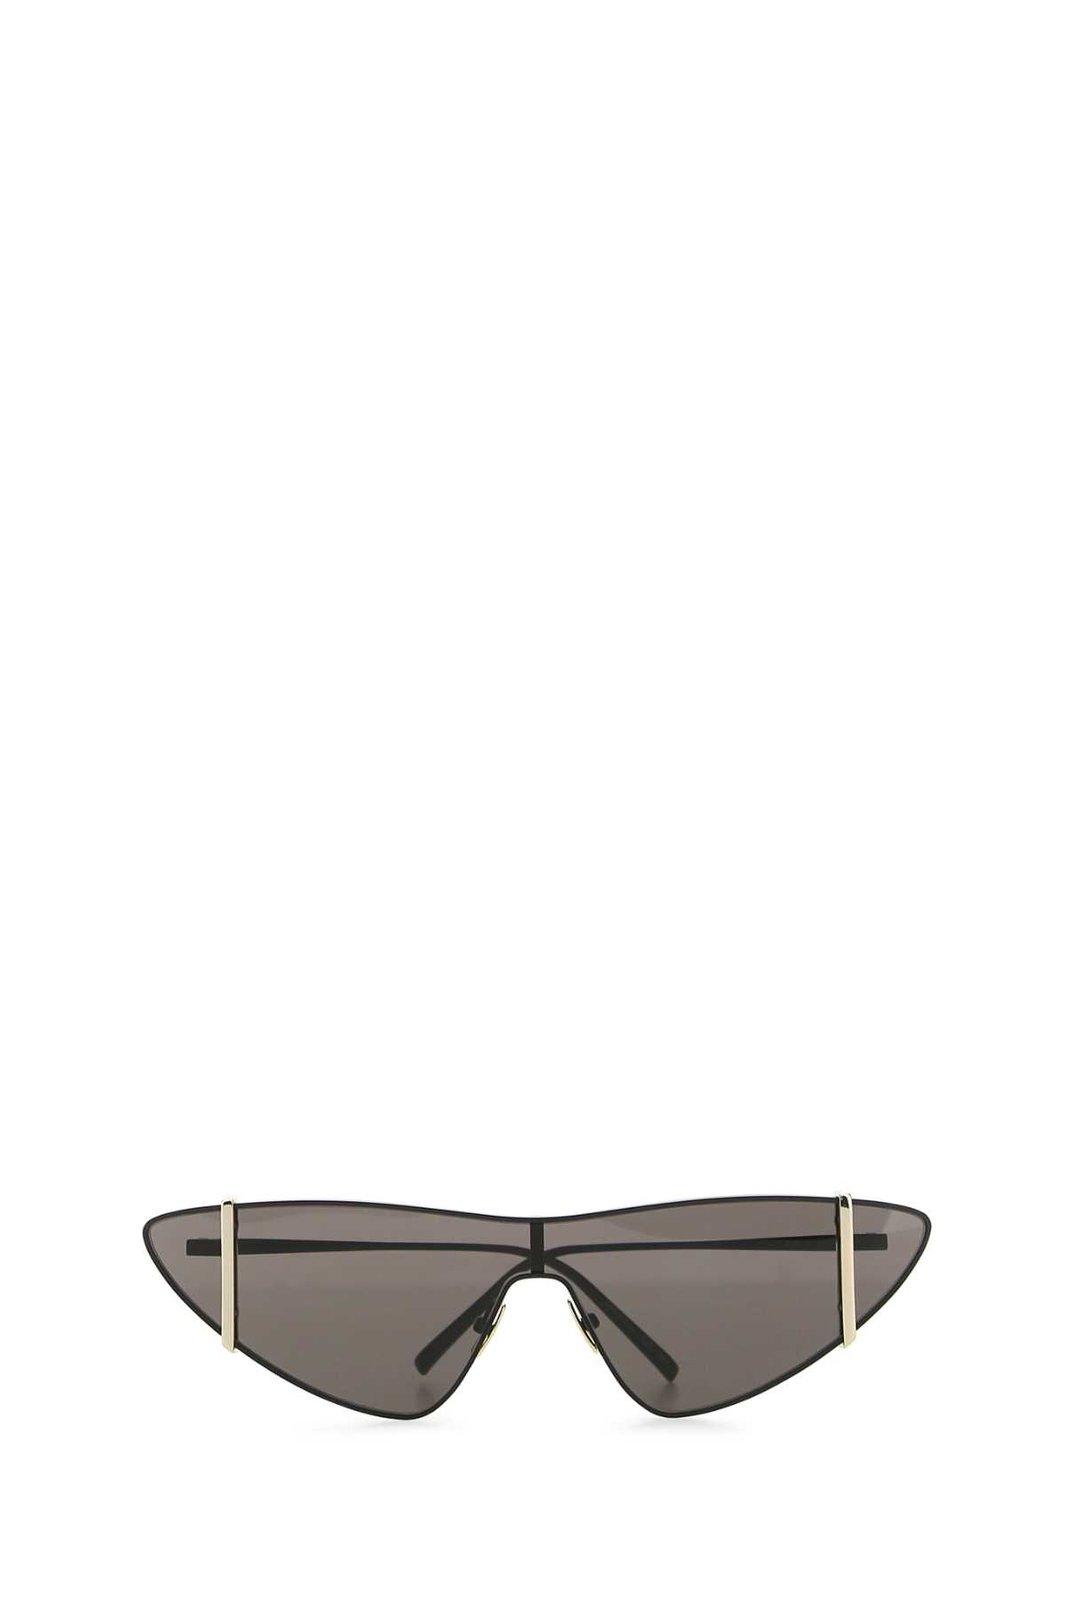 Saint Laurent Cat-eye Sunglasses In Brown